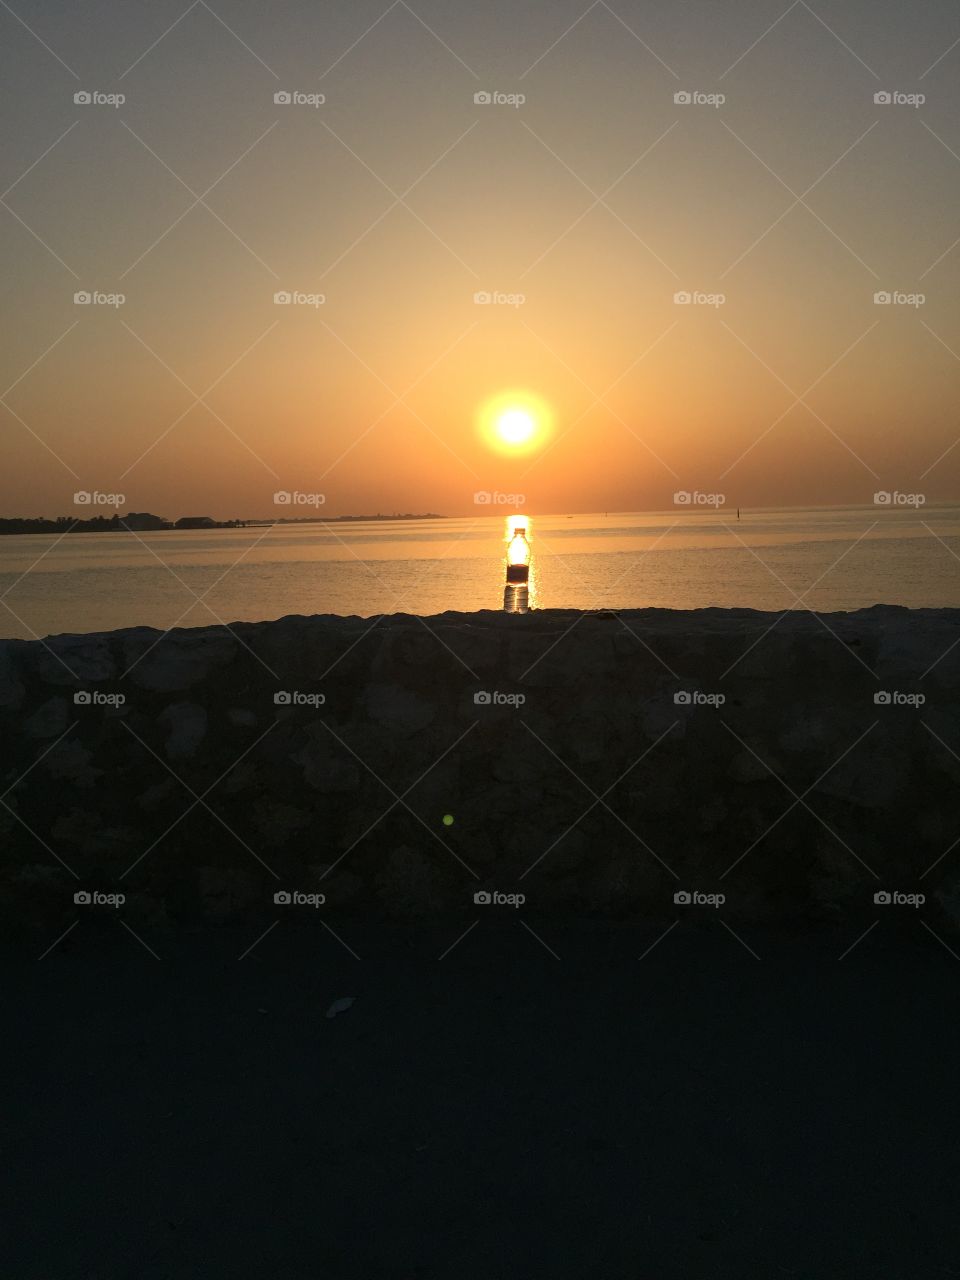 Sunset at Bahrain 